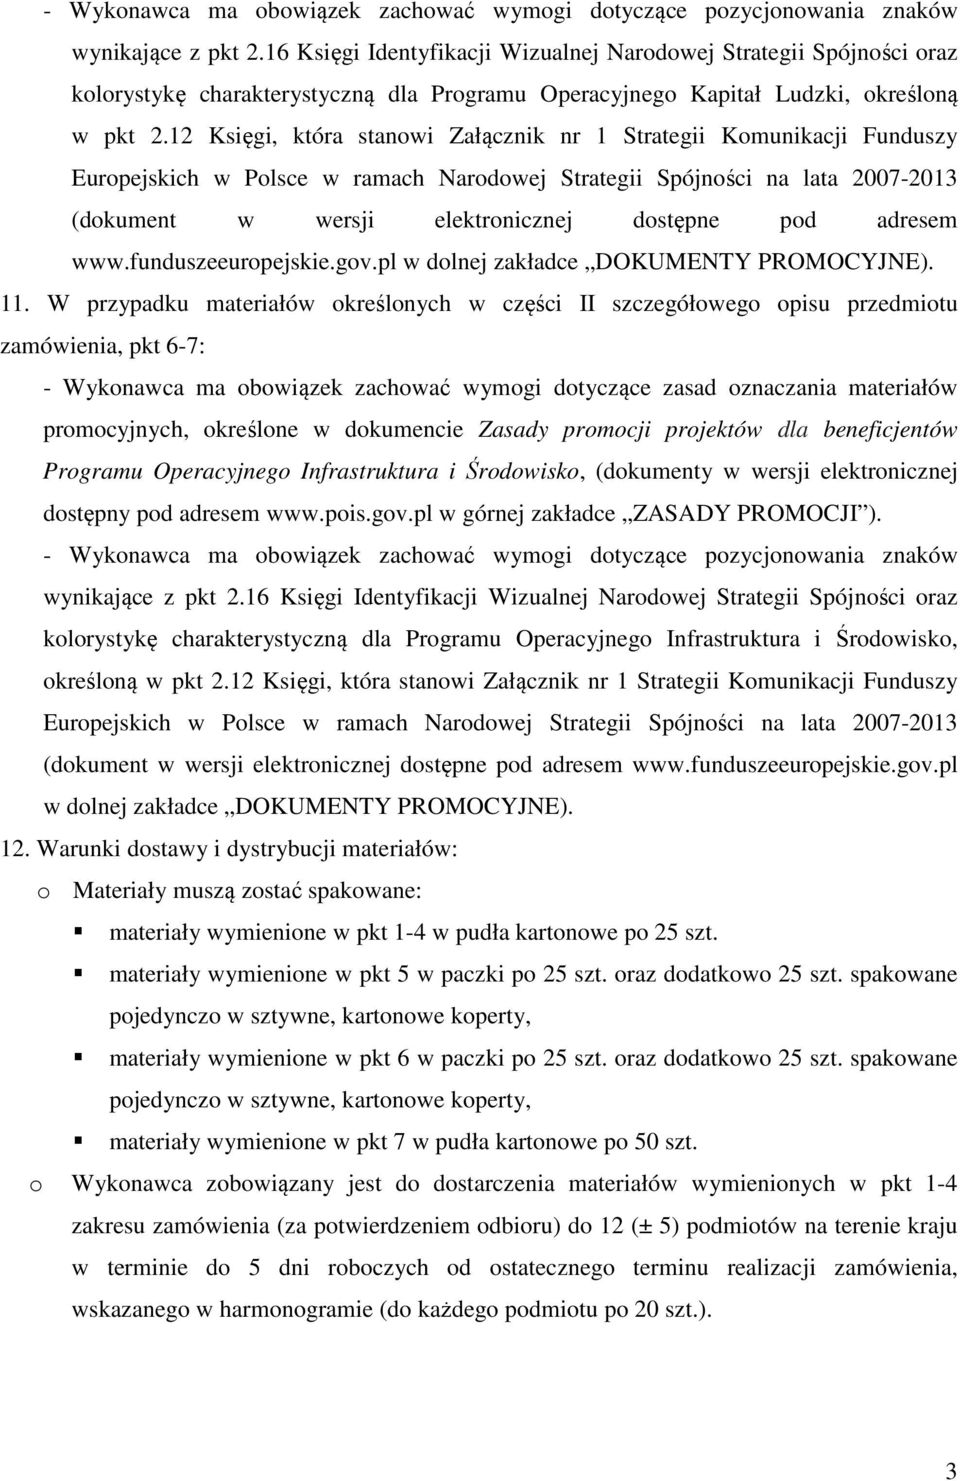 12 Księgi, która stanowi Załącznik nr 1 Strategii Komunikacji Funduszy Europejskich w Polsce w ramach Narodowej Strategii Spójności na lata 2007-2013 (dokument w wersji elektronicznej dostępne pod